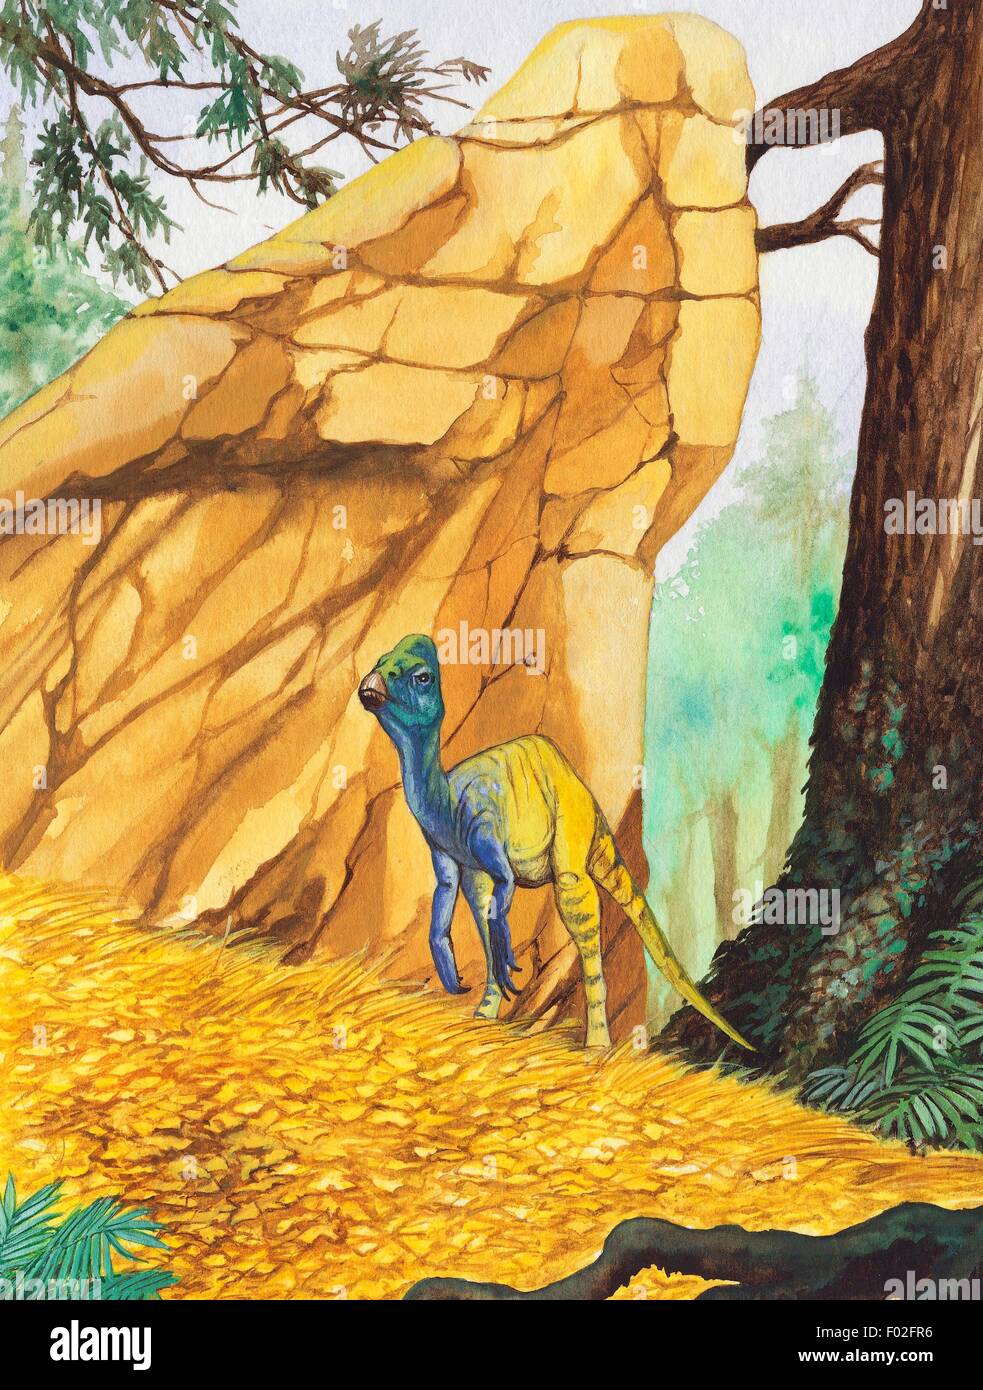 Pachycephalosaurus sp, Pachycephalosauridae, Cretaceous. Illustration. Stock Photo